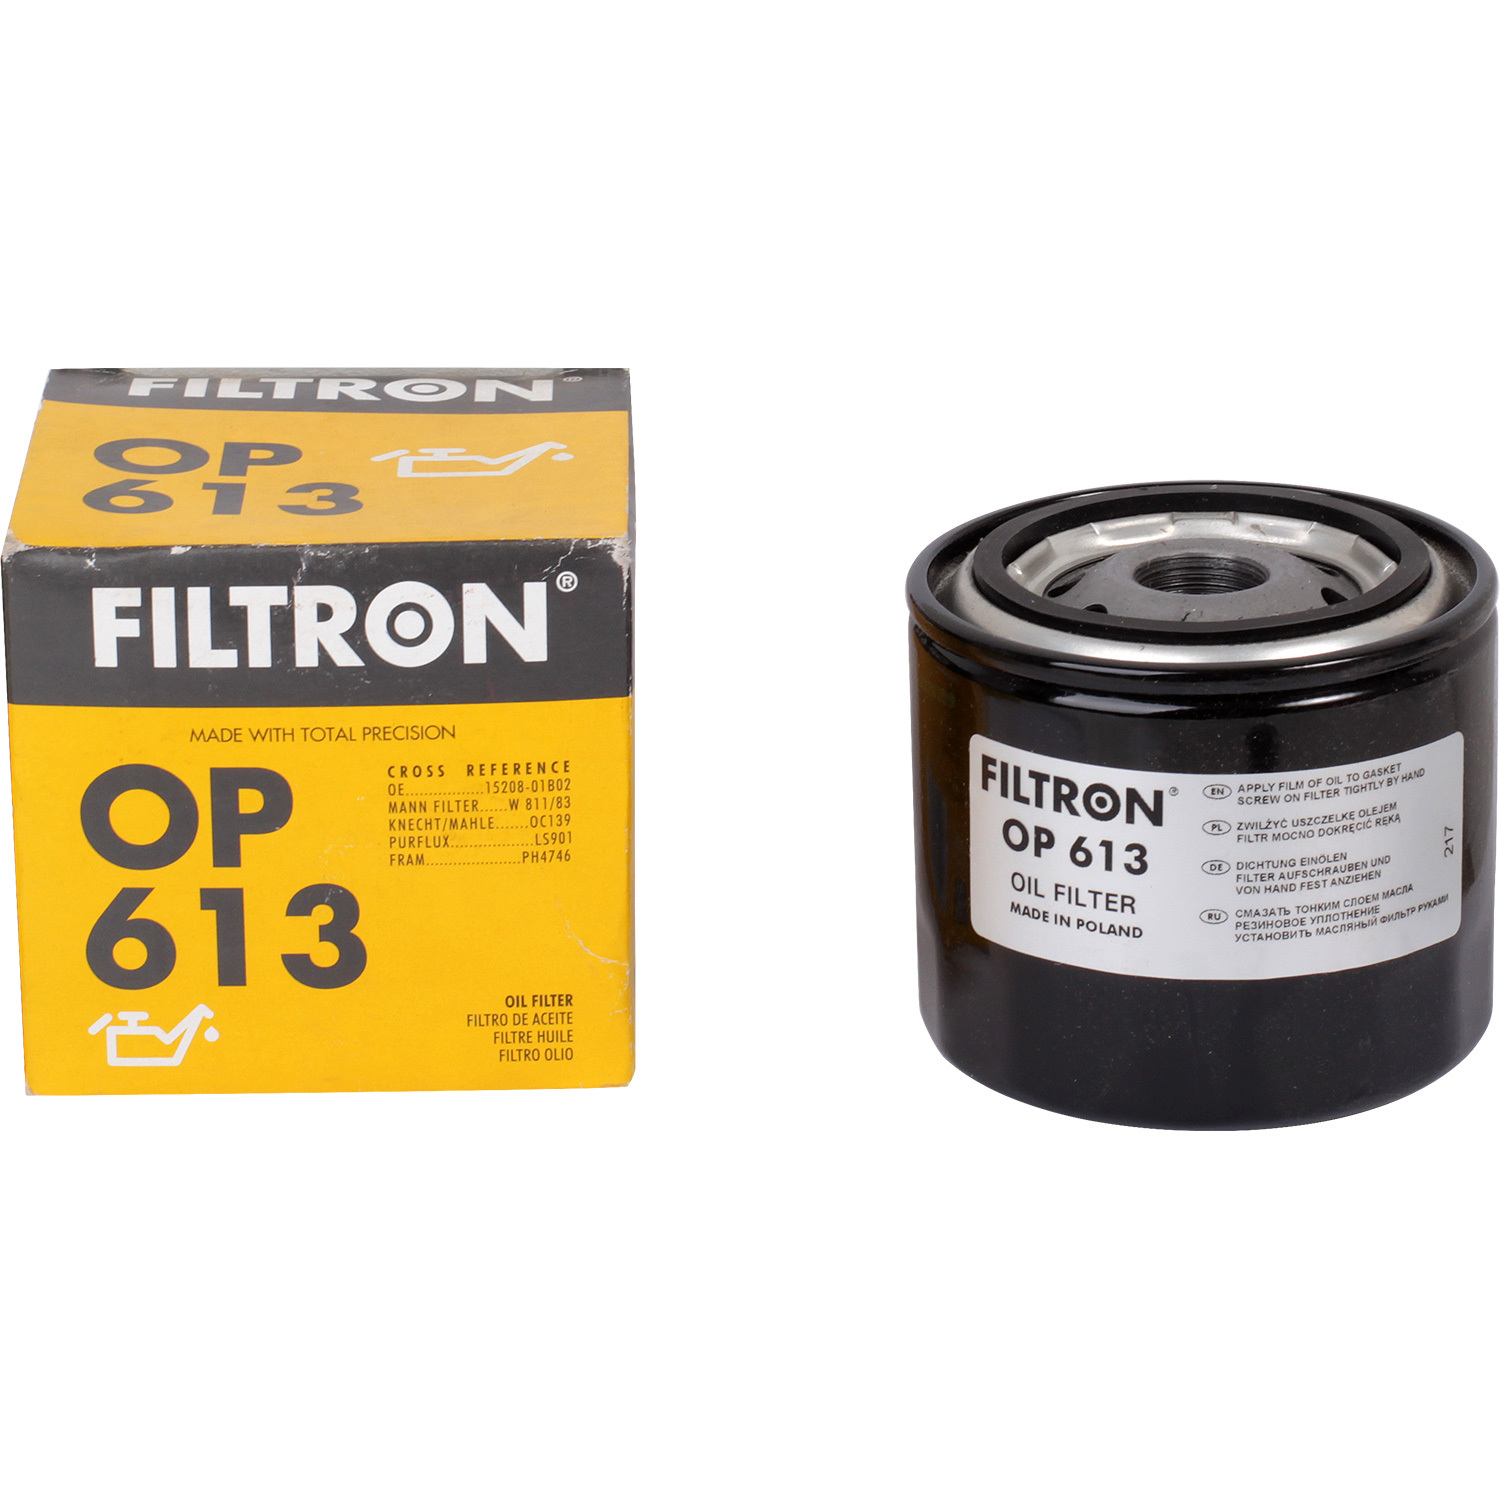 фильтры filtron фильтр масляный filtron op613 Фильтры Filtron Фильтр масляный Filtron OP613